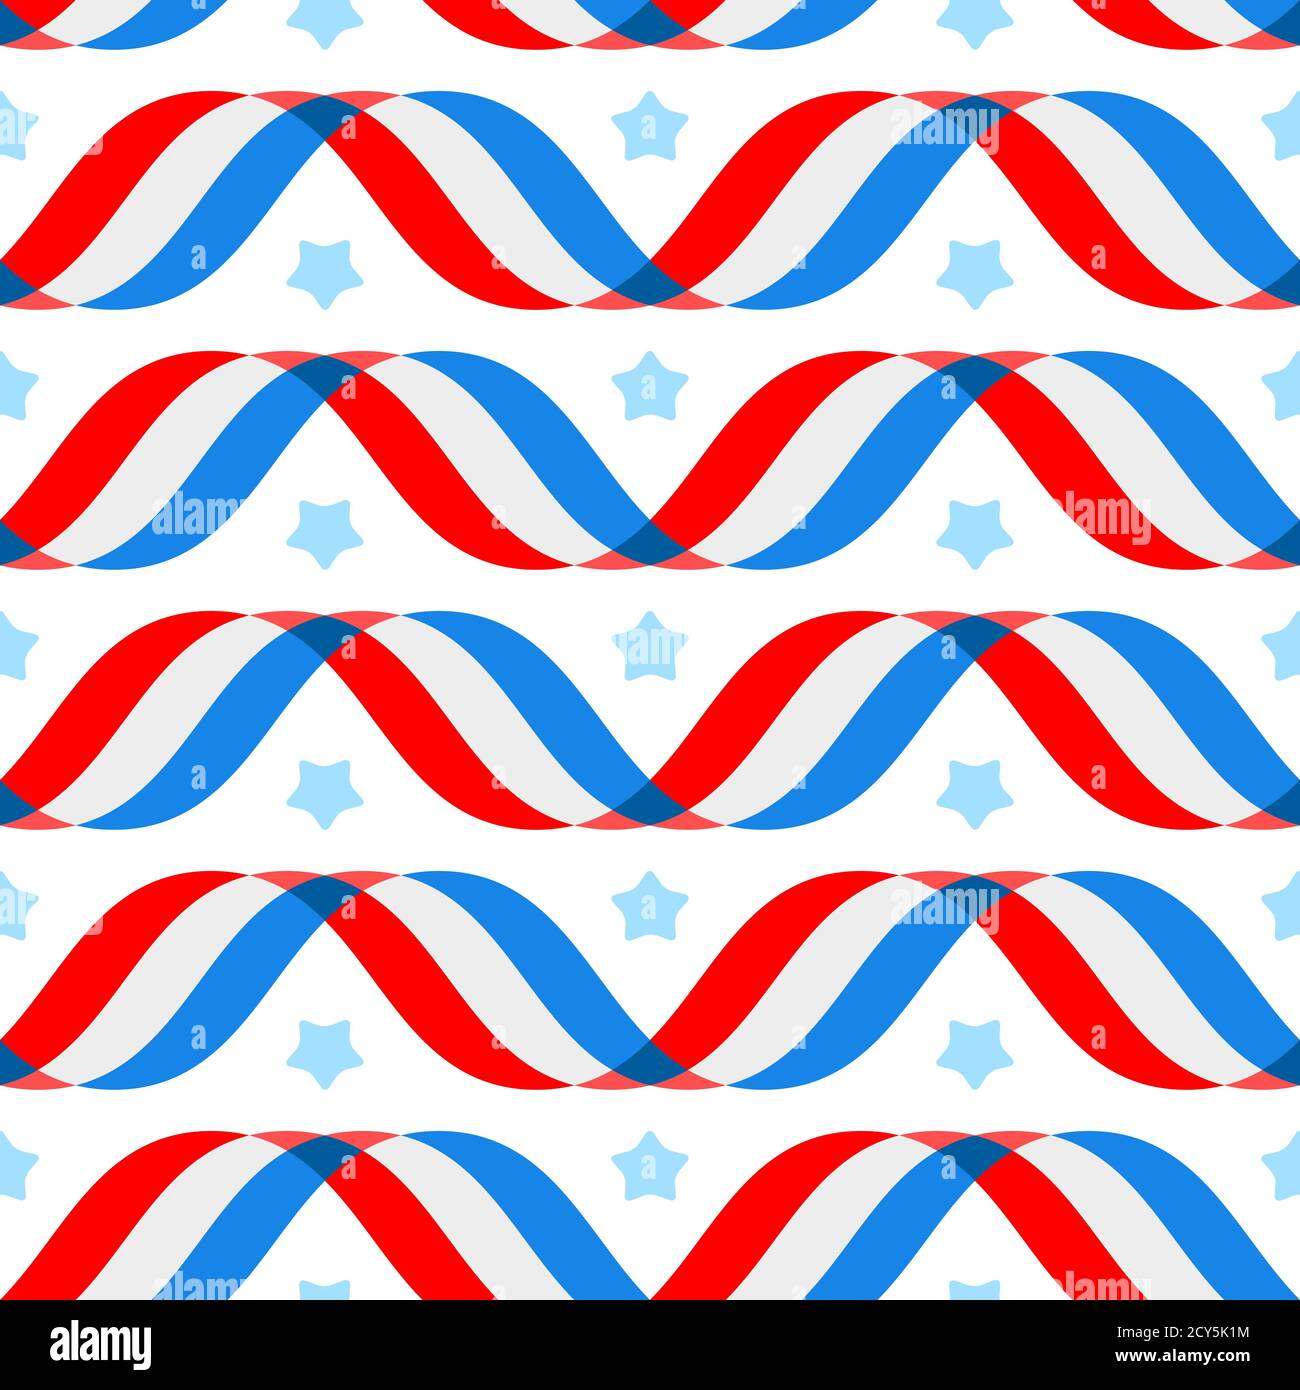 Arrière-plan patriotique américain, jour de l'indépendance 4 juillet. Illustration vectorielle. Arrière-plan géométrique abstrait rouge-bleu-blanc avec rayures de drapeaux Illustration de Vecteur